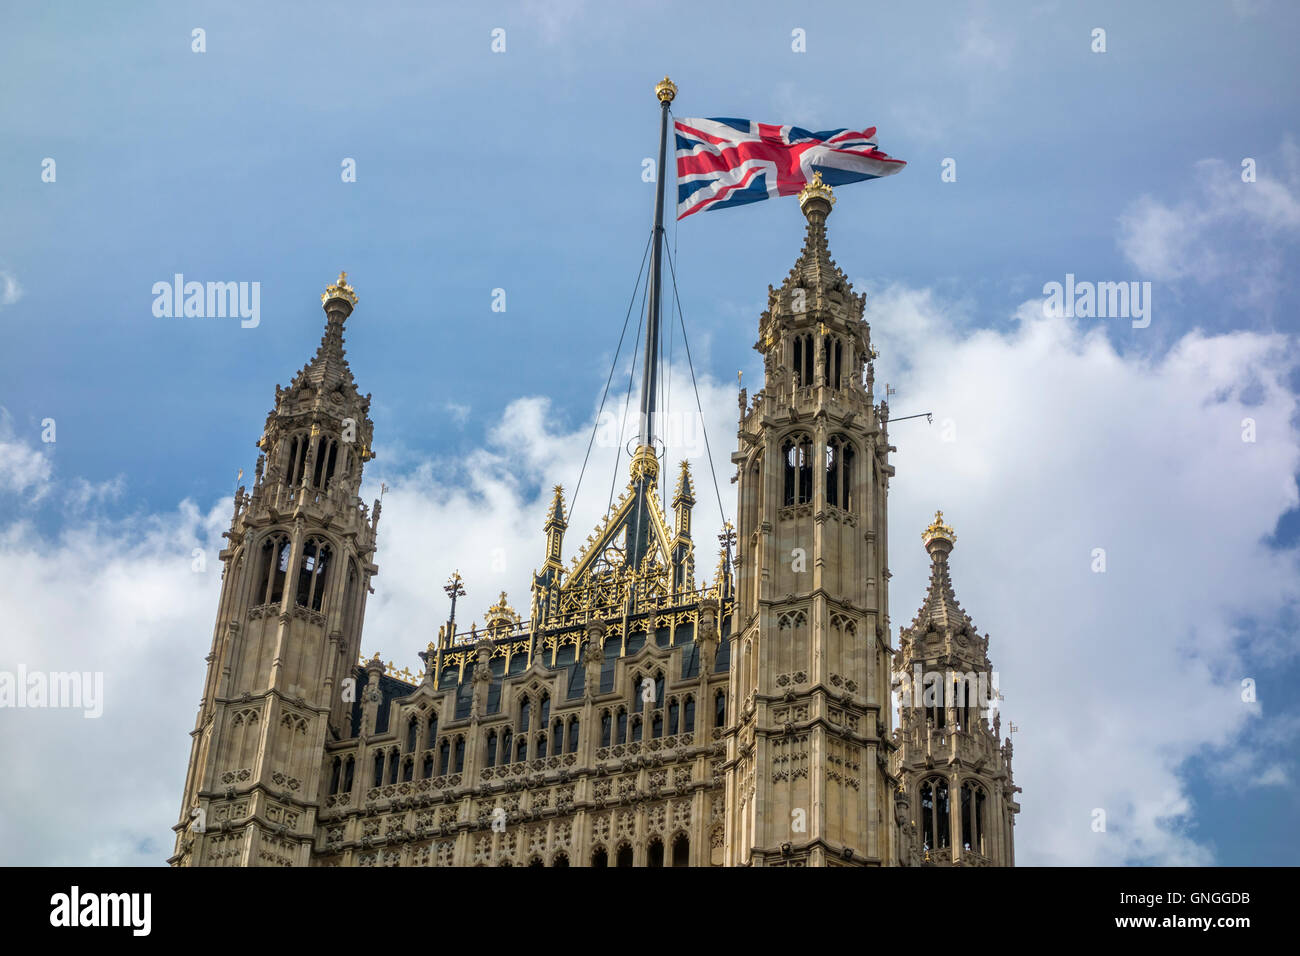 L'Union, survolant tour Victoria, chambres du Parlement. London, UK Banque D'Images